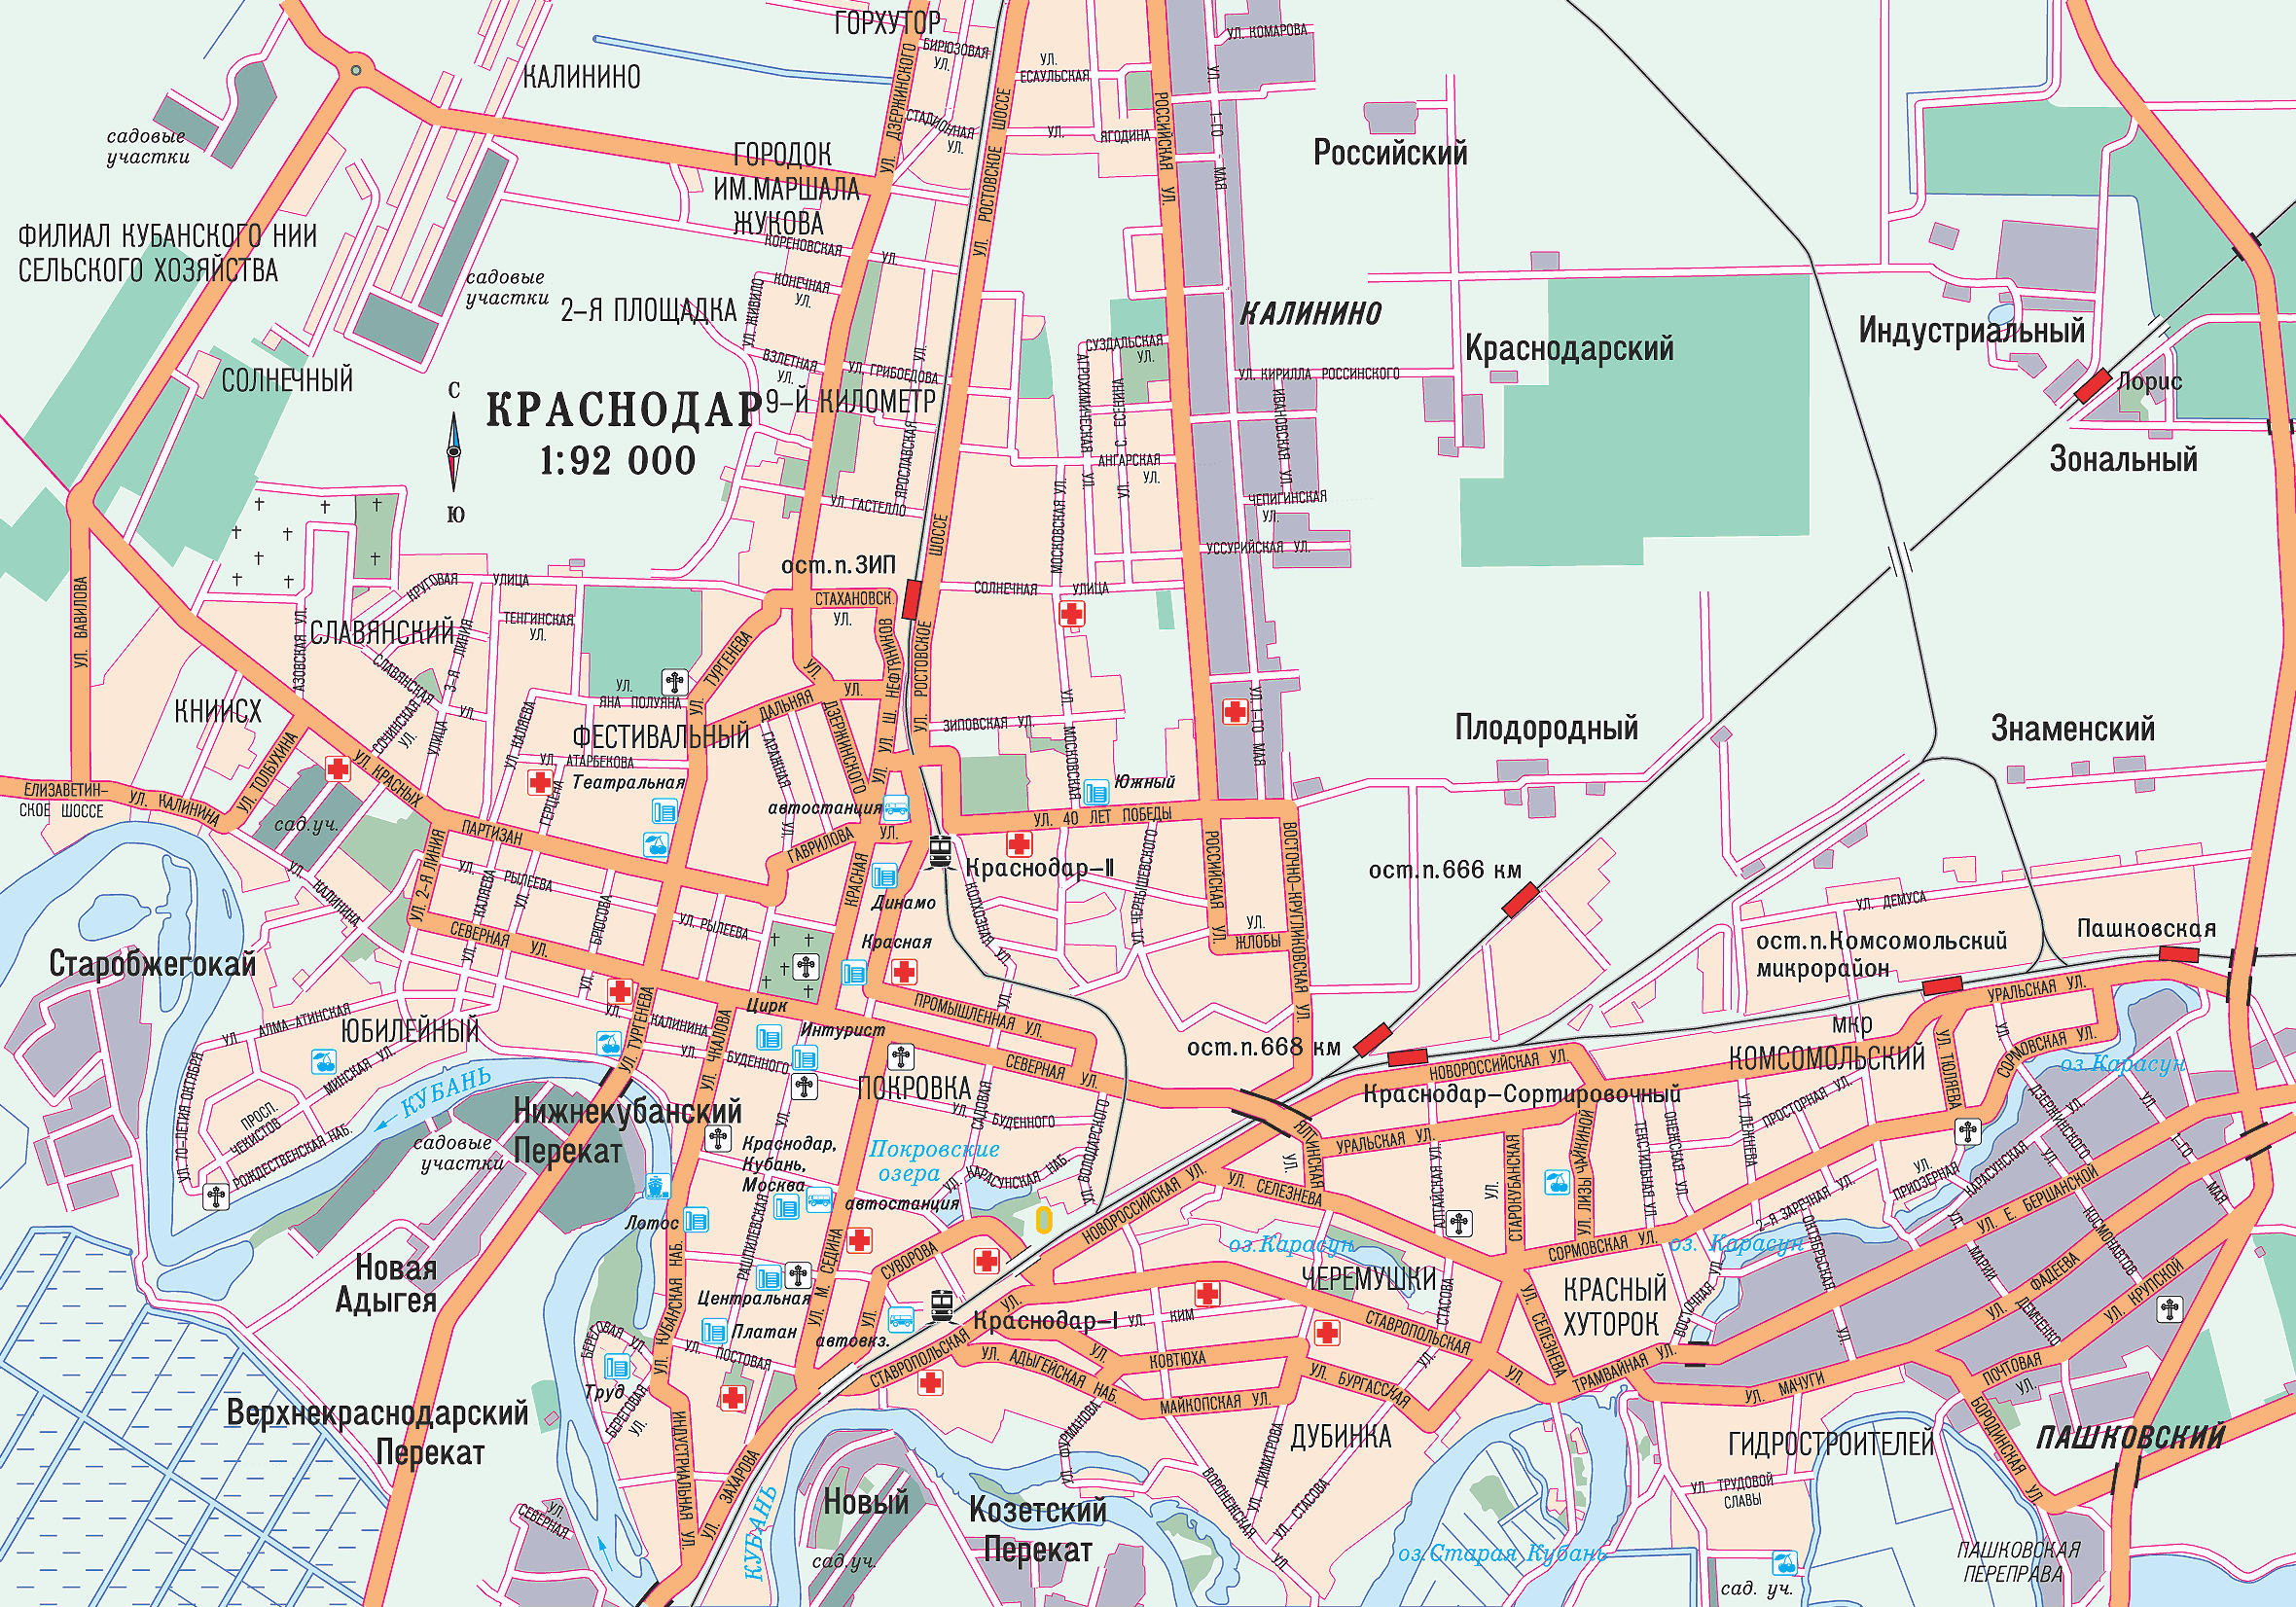 парки краснодара на карте с названиями и описанием